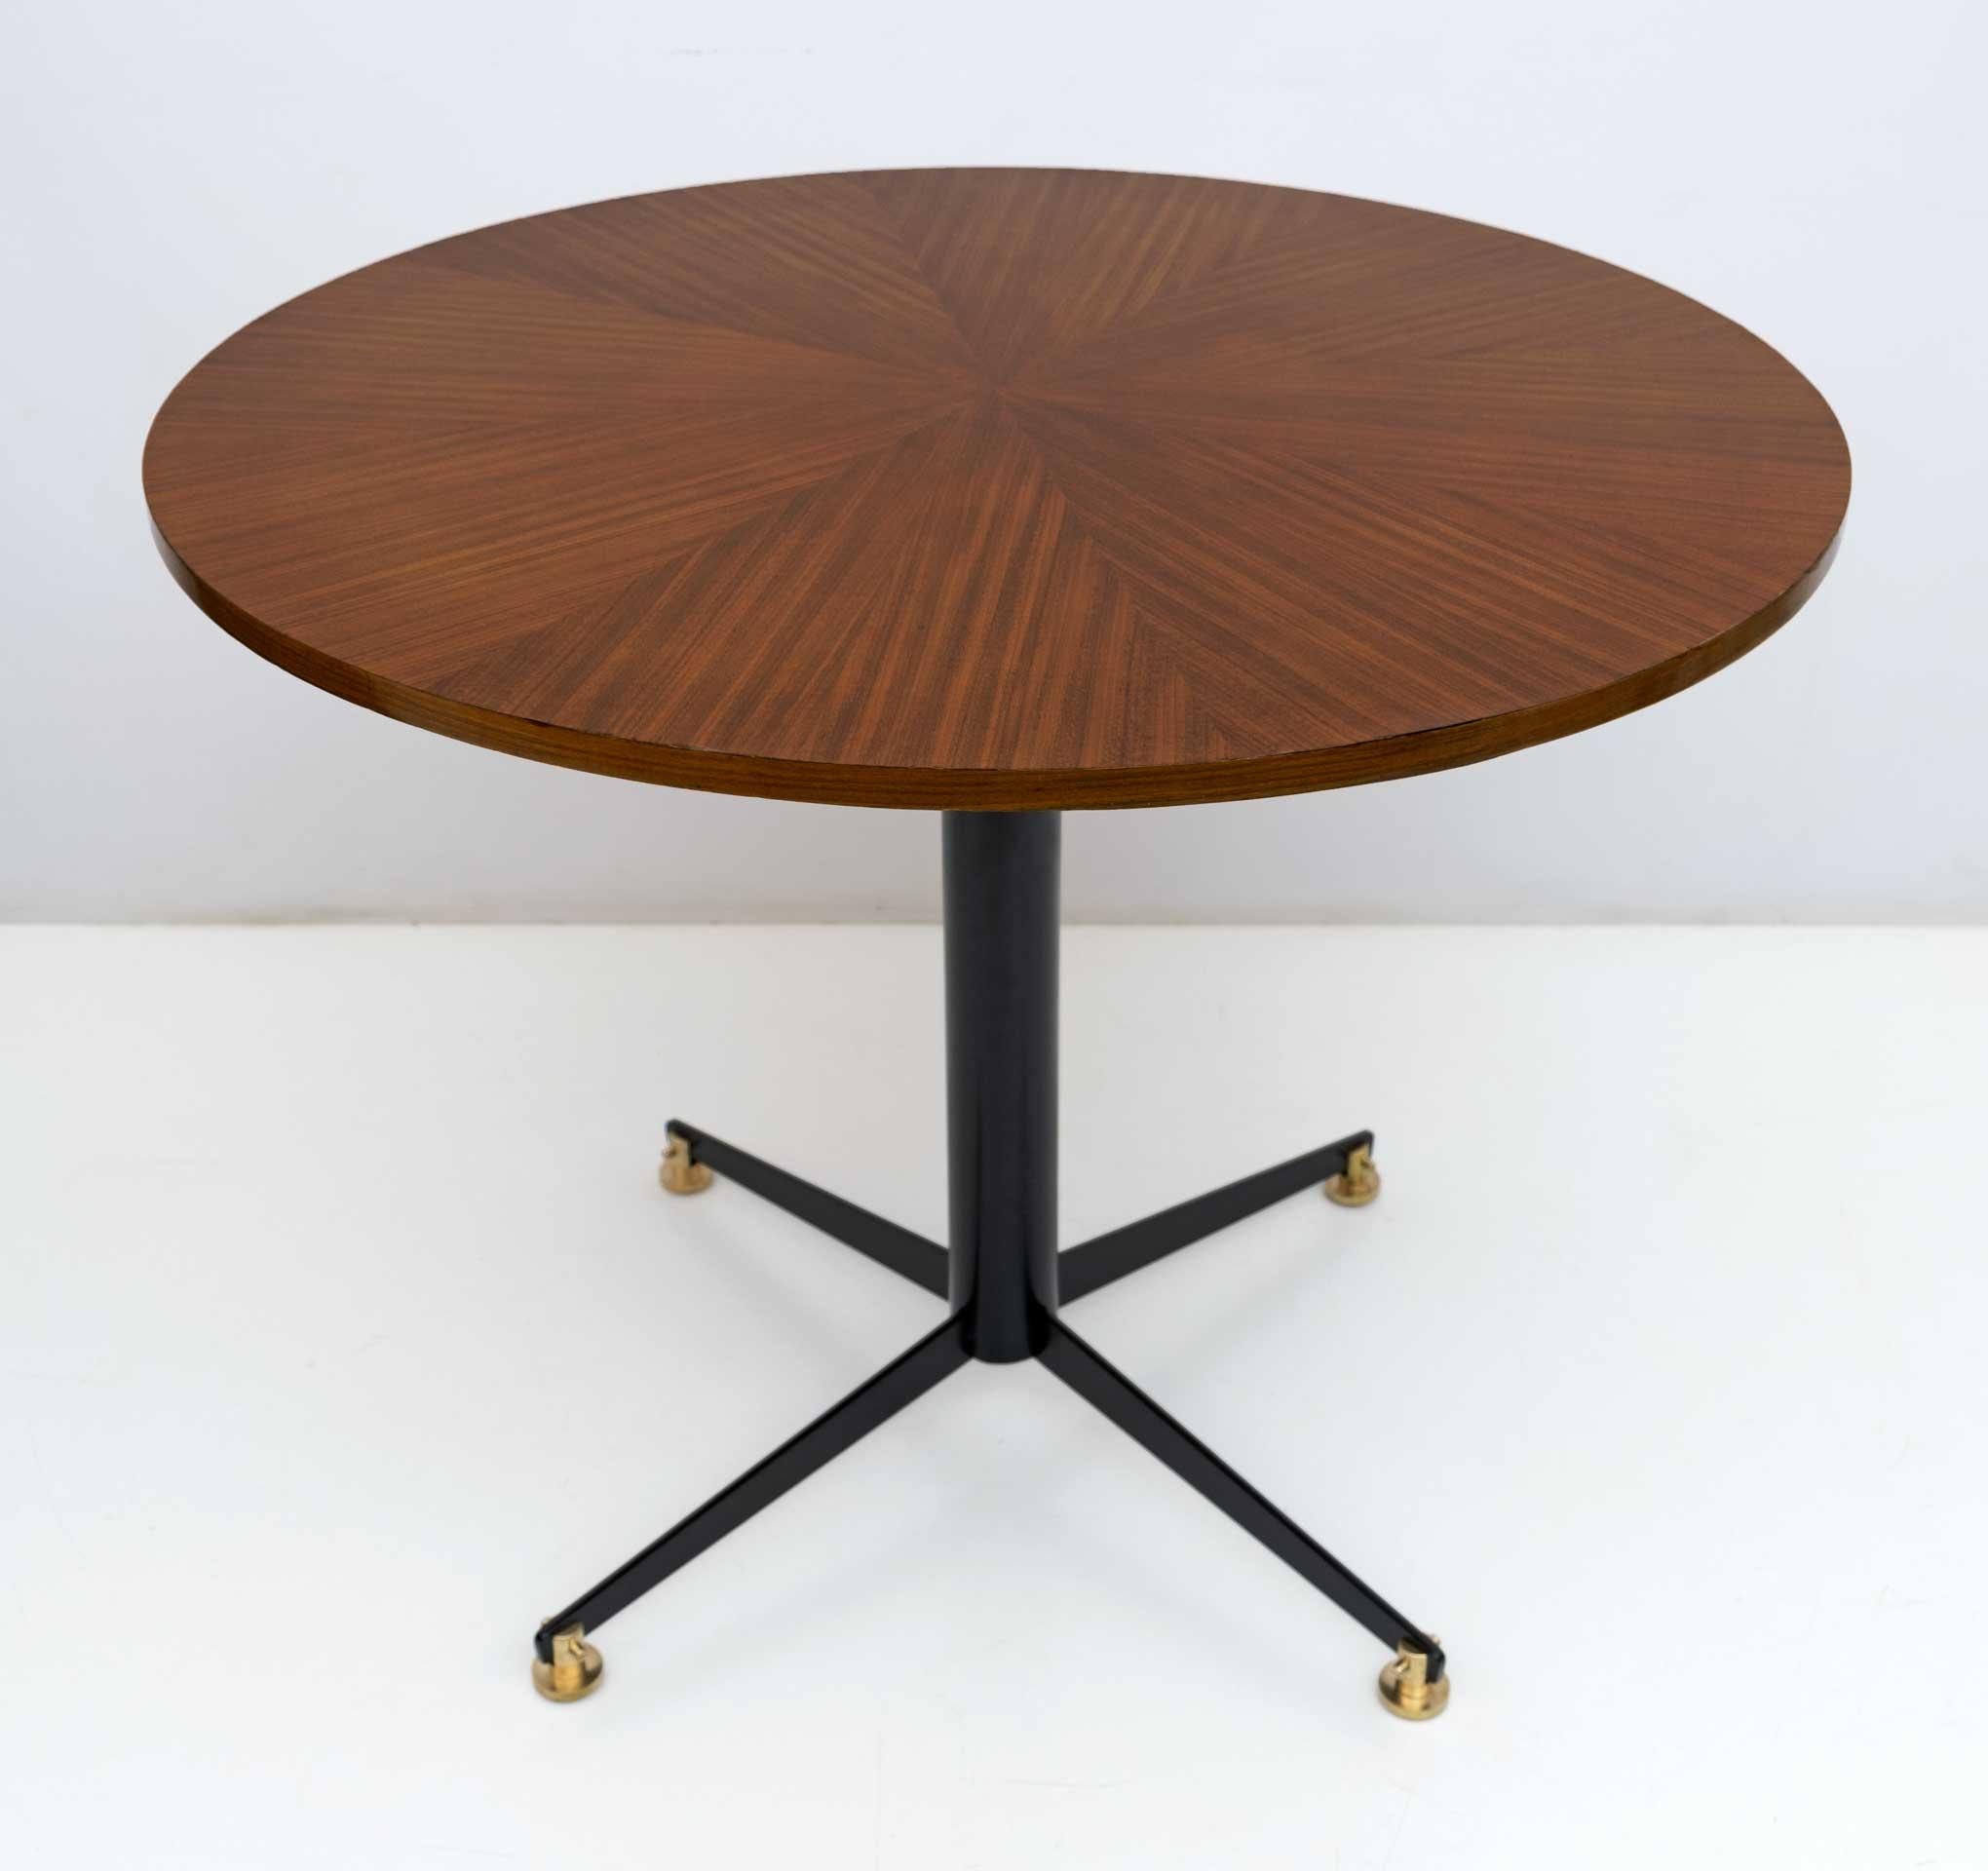 Tisch, der in den 1950er Jahren von Fratelli Tagliabue nach einem Entwurf von Vittorio Nobili hergestellt wurde. Sockel aus schwarz lackiertem Metall und Füße aus Messing, runde Platte aus furniertem Teakholz im Fischgrätmuster. Vollständig